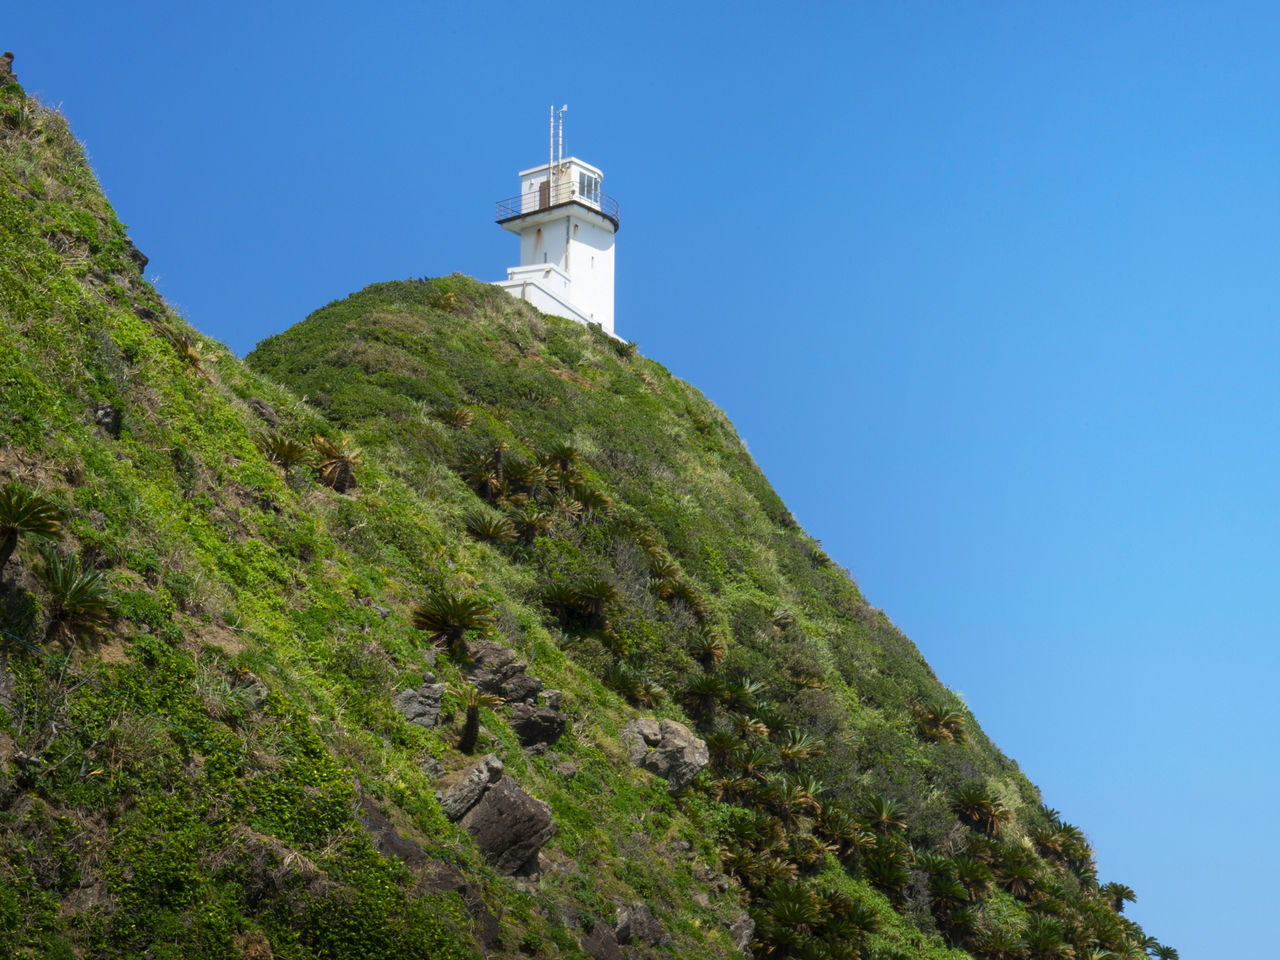 伫立在奄美大岛最北端的笠利崎灯台